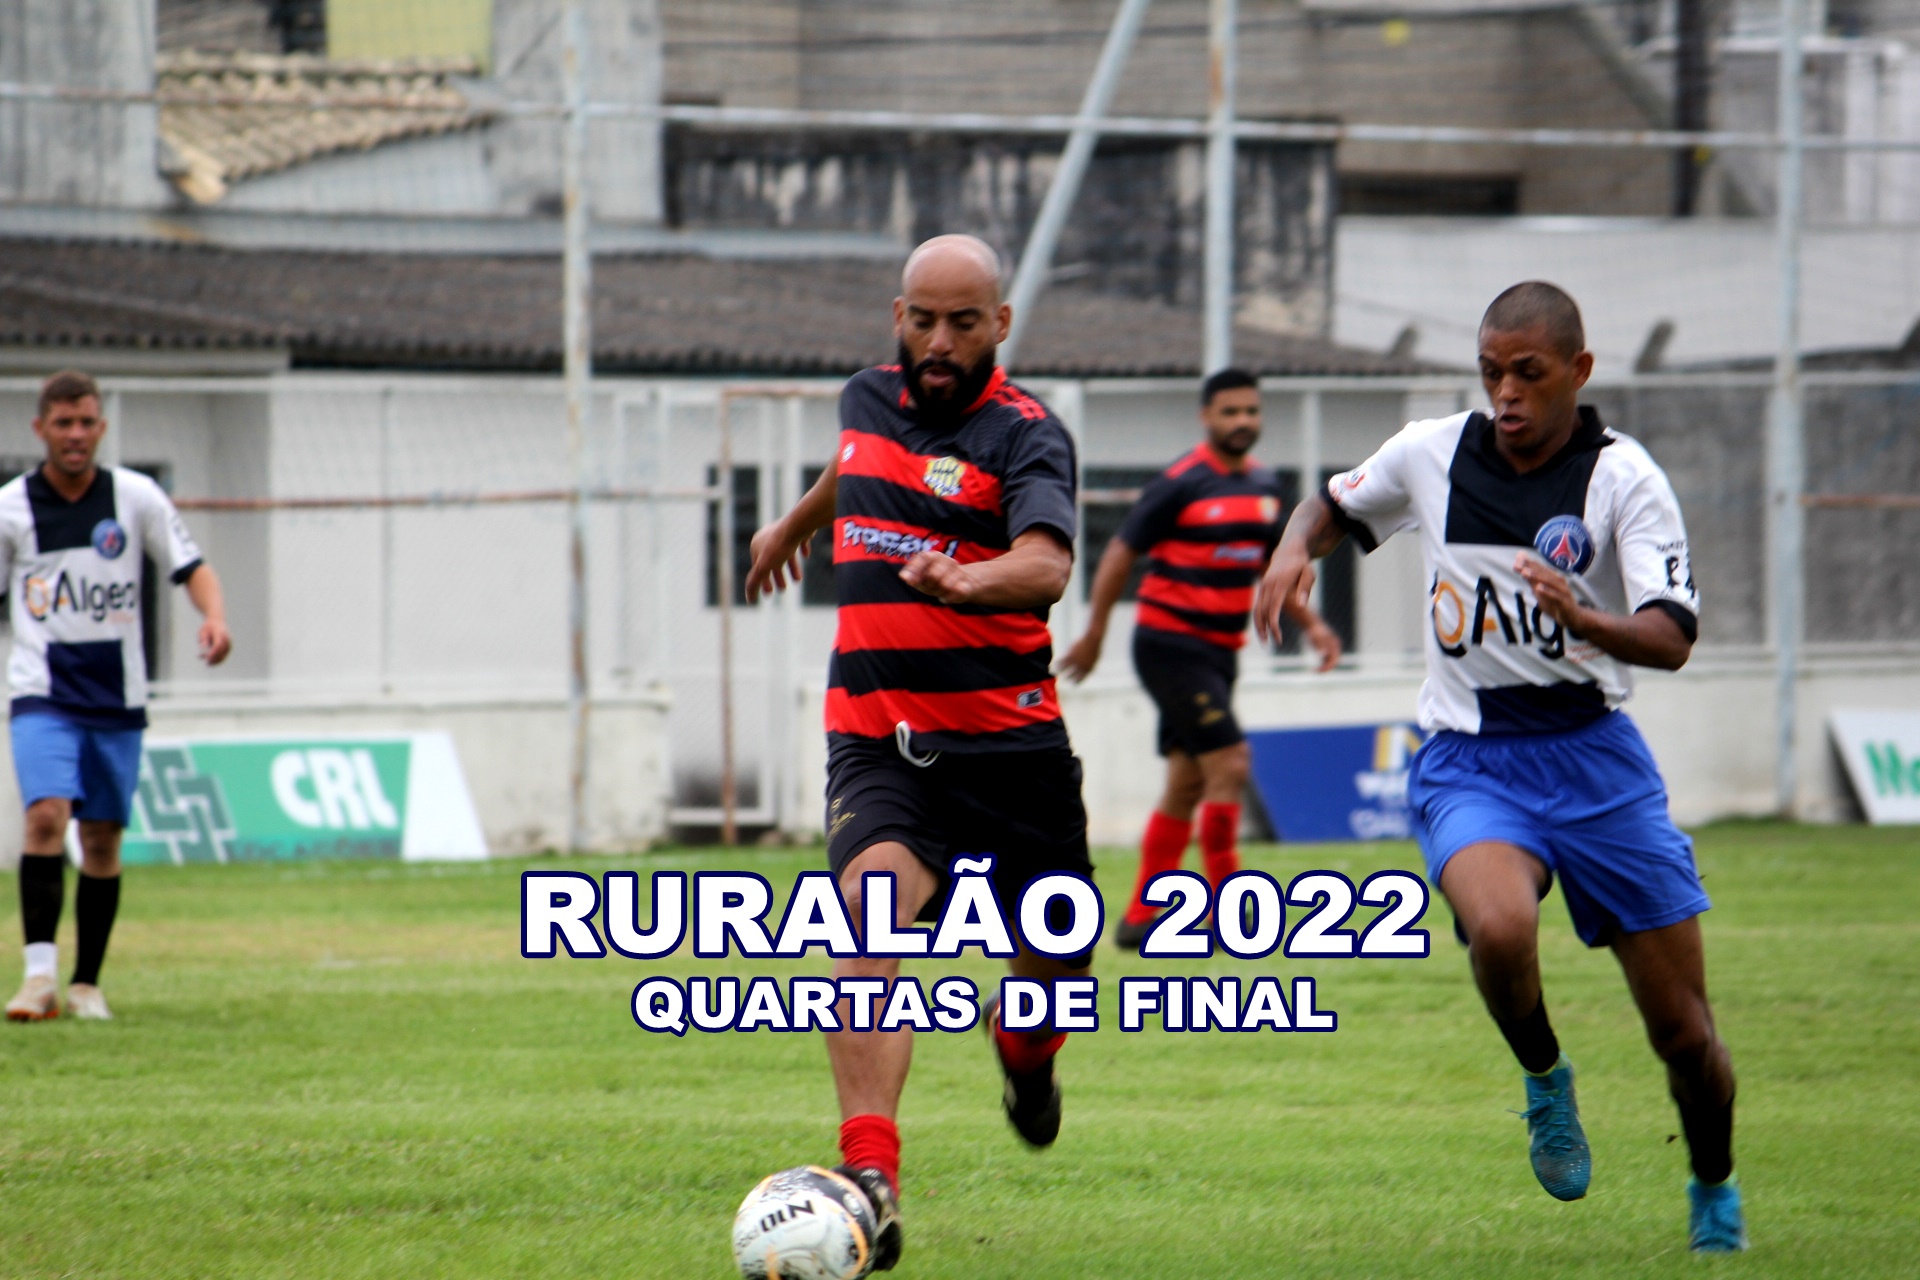 Ruralão 2022 começou a fase de Quartas Final